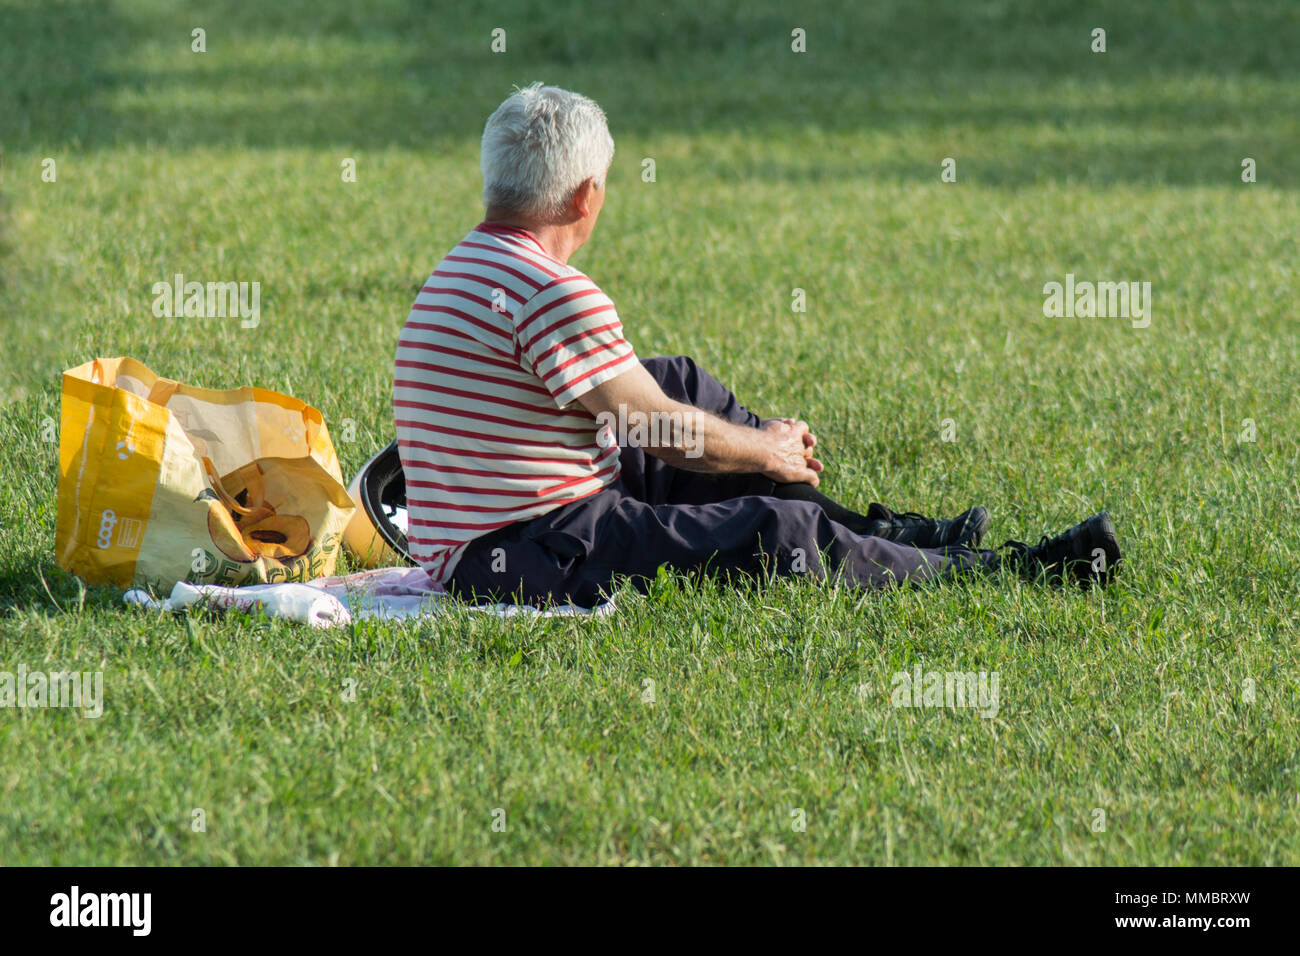 Seitenansicht eines alten pensionierter Mann in einem Park Stockfoto